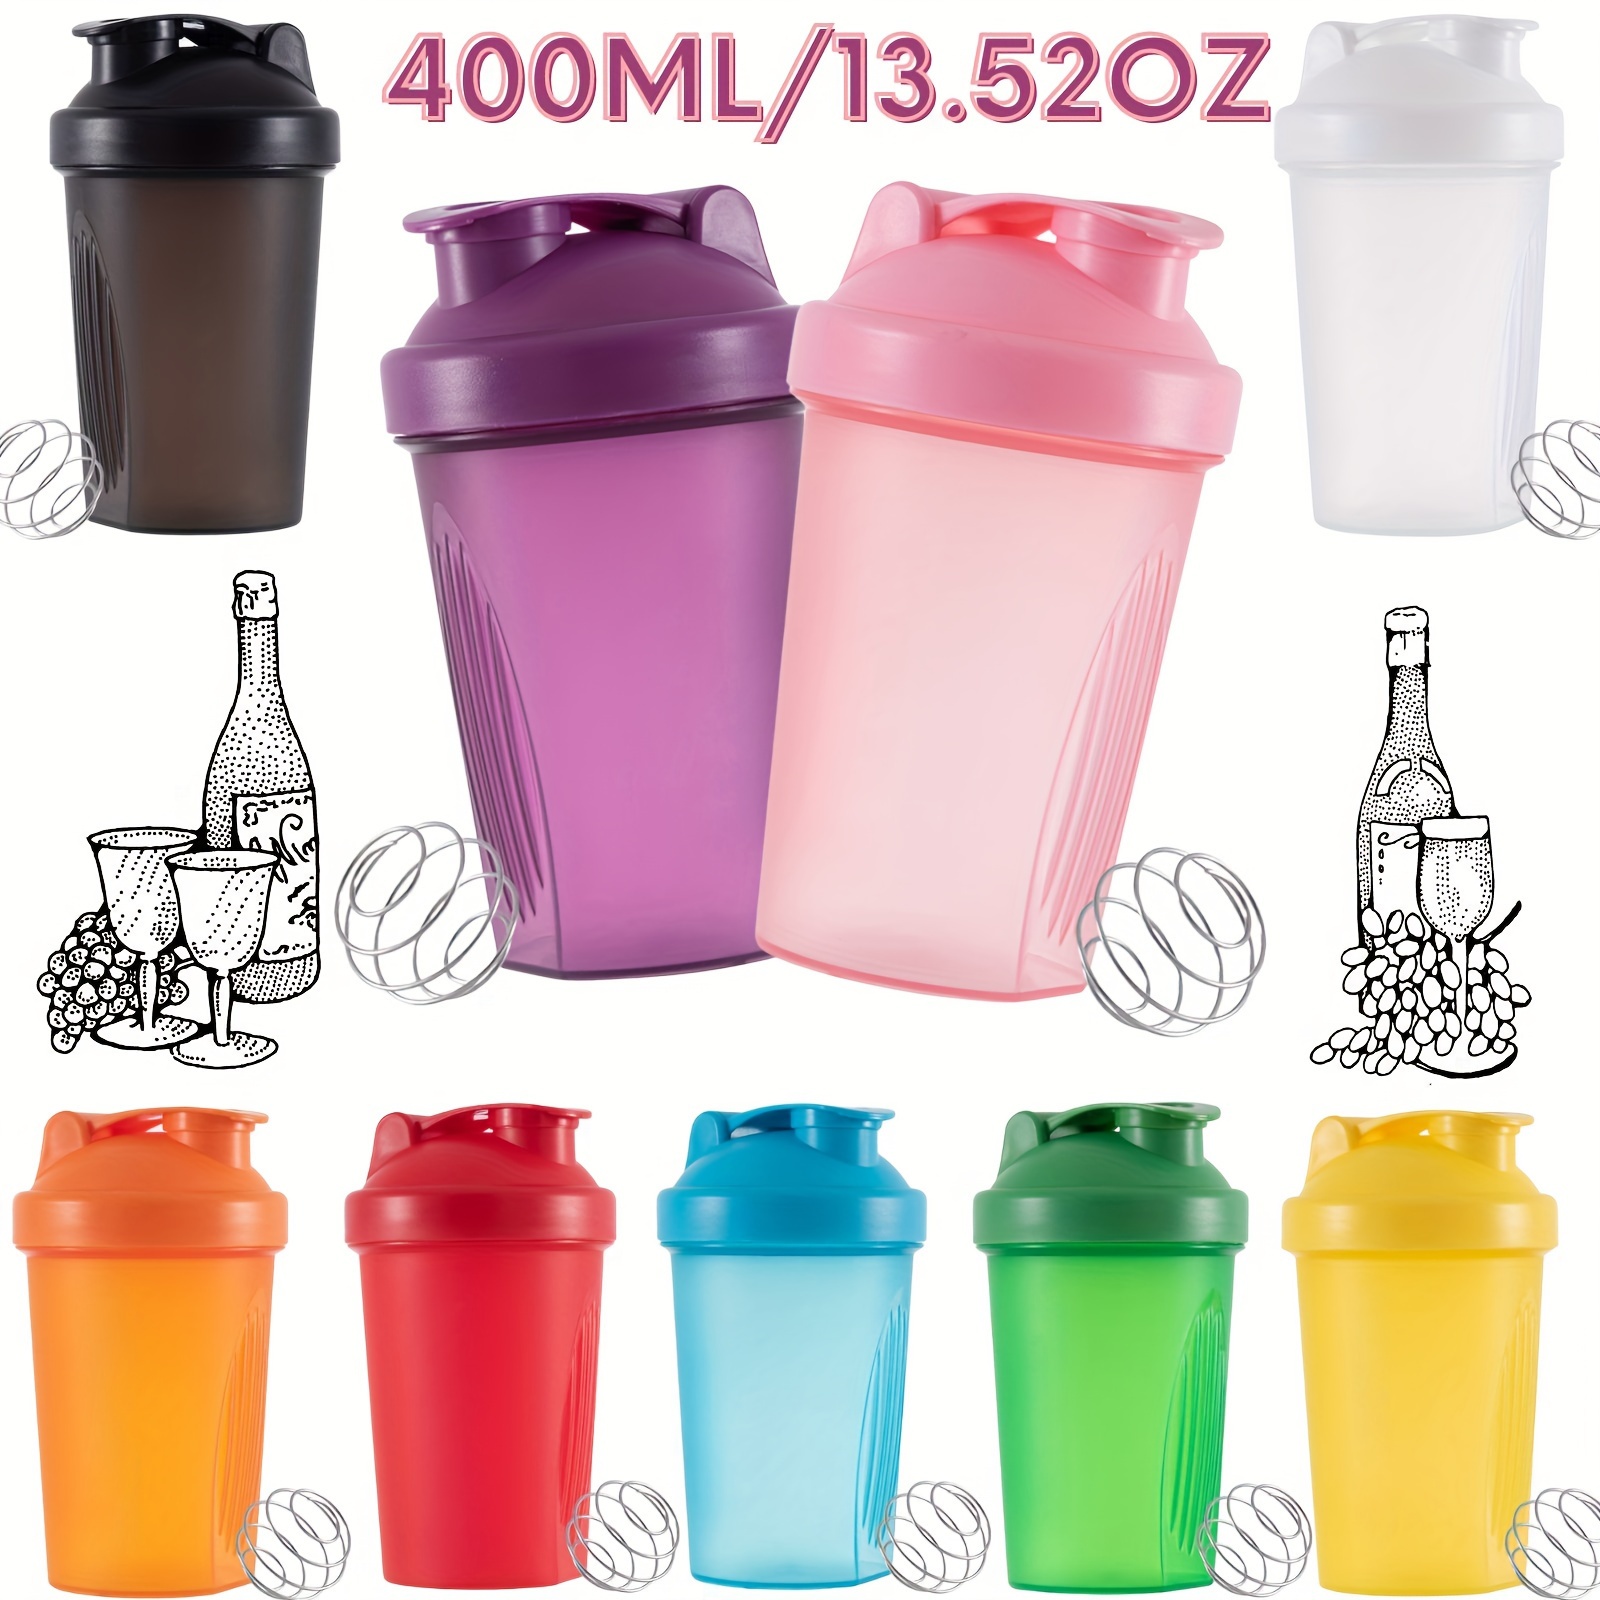 

1pc 400ml/13.5oz In Protein Mixing Shaker Bottle, Protein Shaker Bottle With Wire Mixing Ball, Shaker Cup, Mixing Bottle, Protein Shaker Bottle, Bartender Utensils, Household Utensils